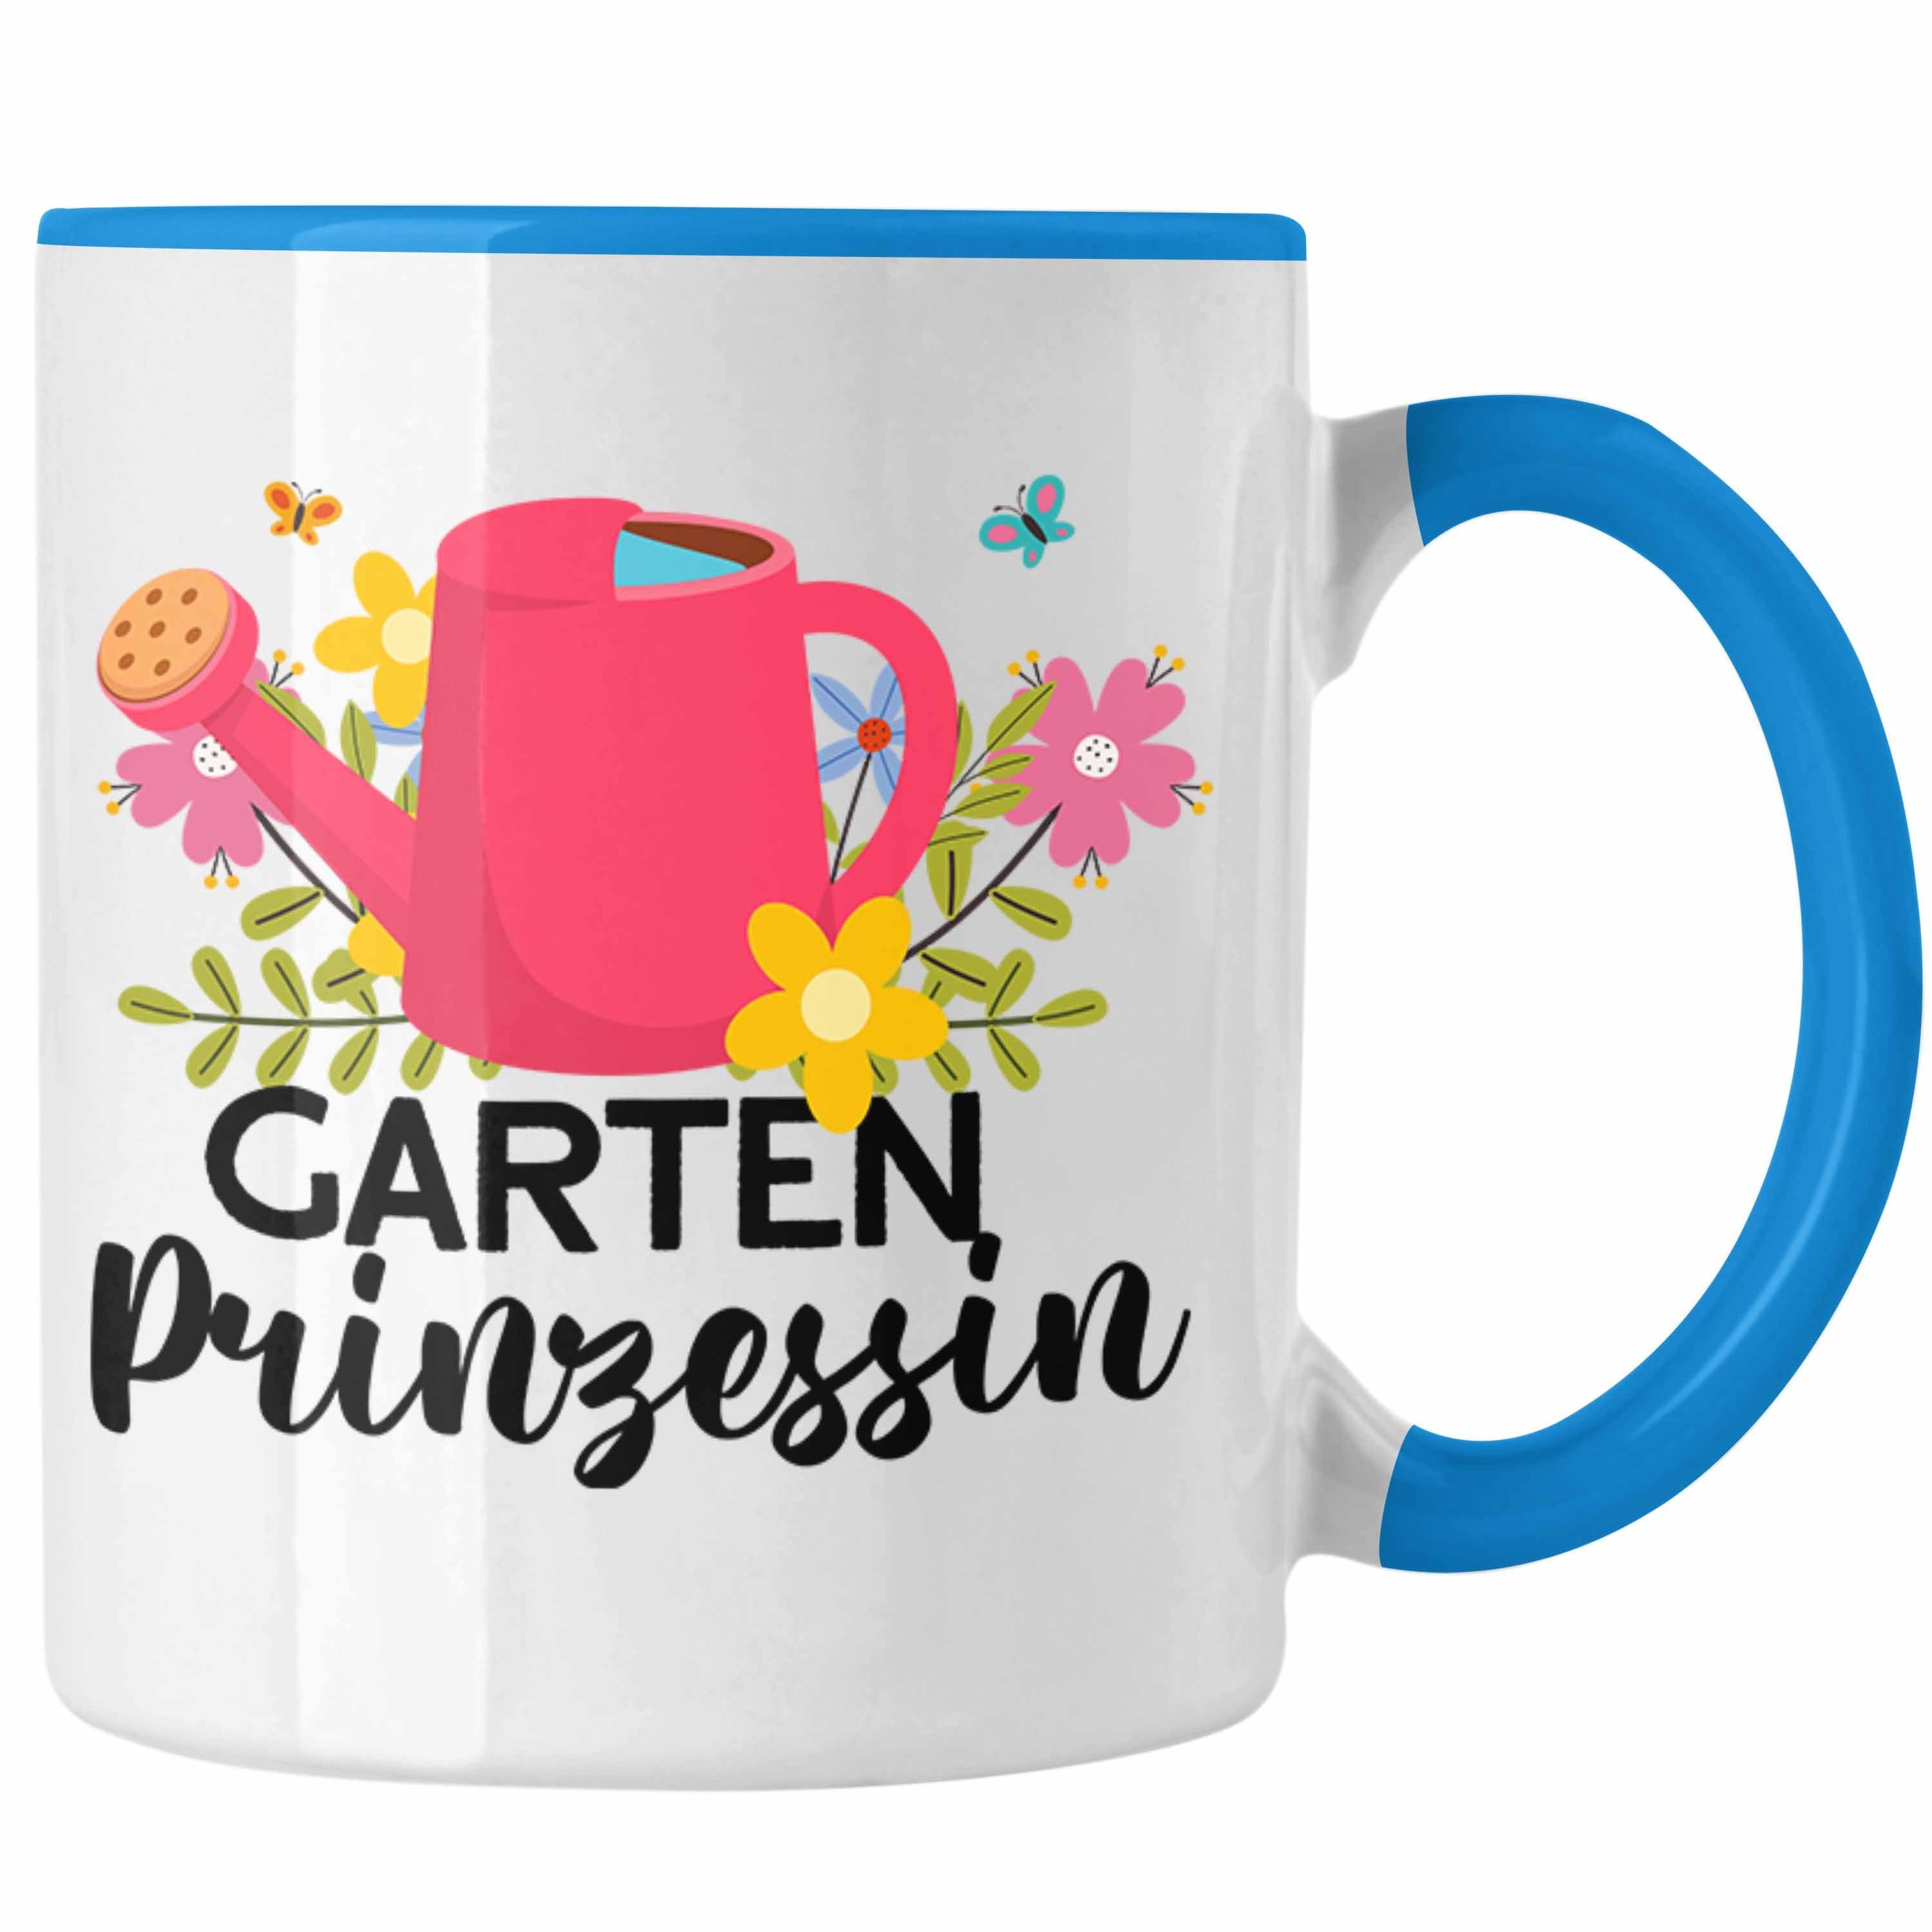 Gärtnerin Trendation Tasse Geschenkidee Tasse Prinzessin Rentnerin Weiss Garten Trendation Geschenk -